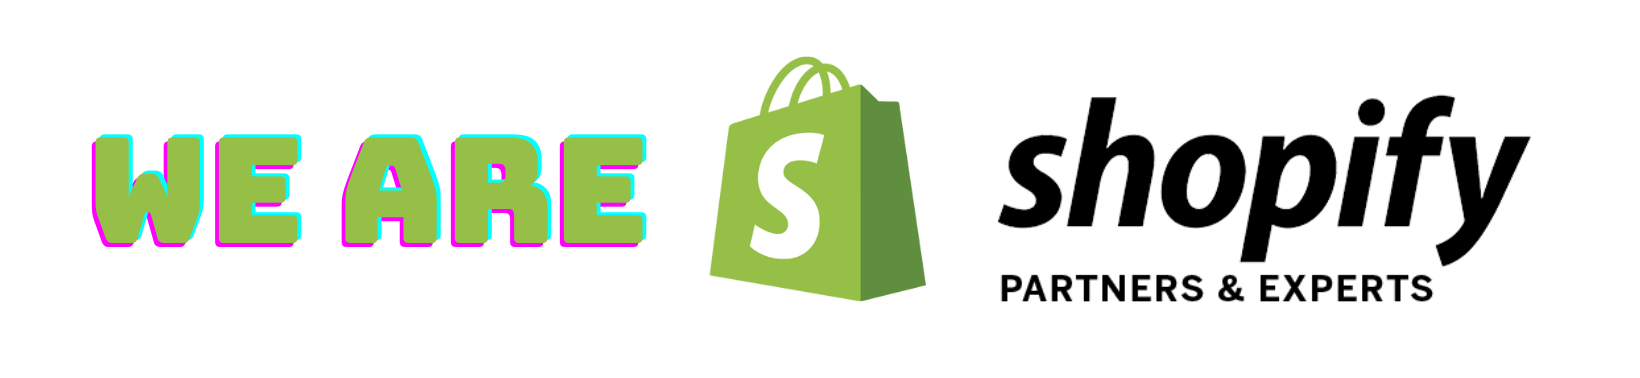 Κατασκευή & Ανάπτυξη eShop σε Shopify στην Ελλάδα